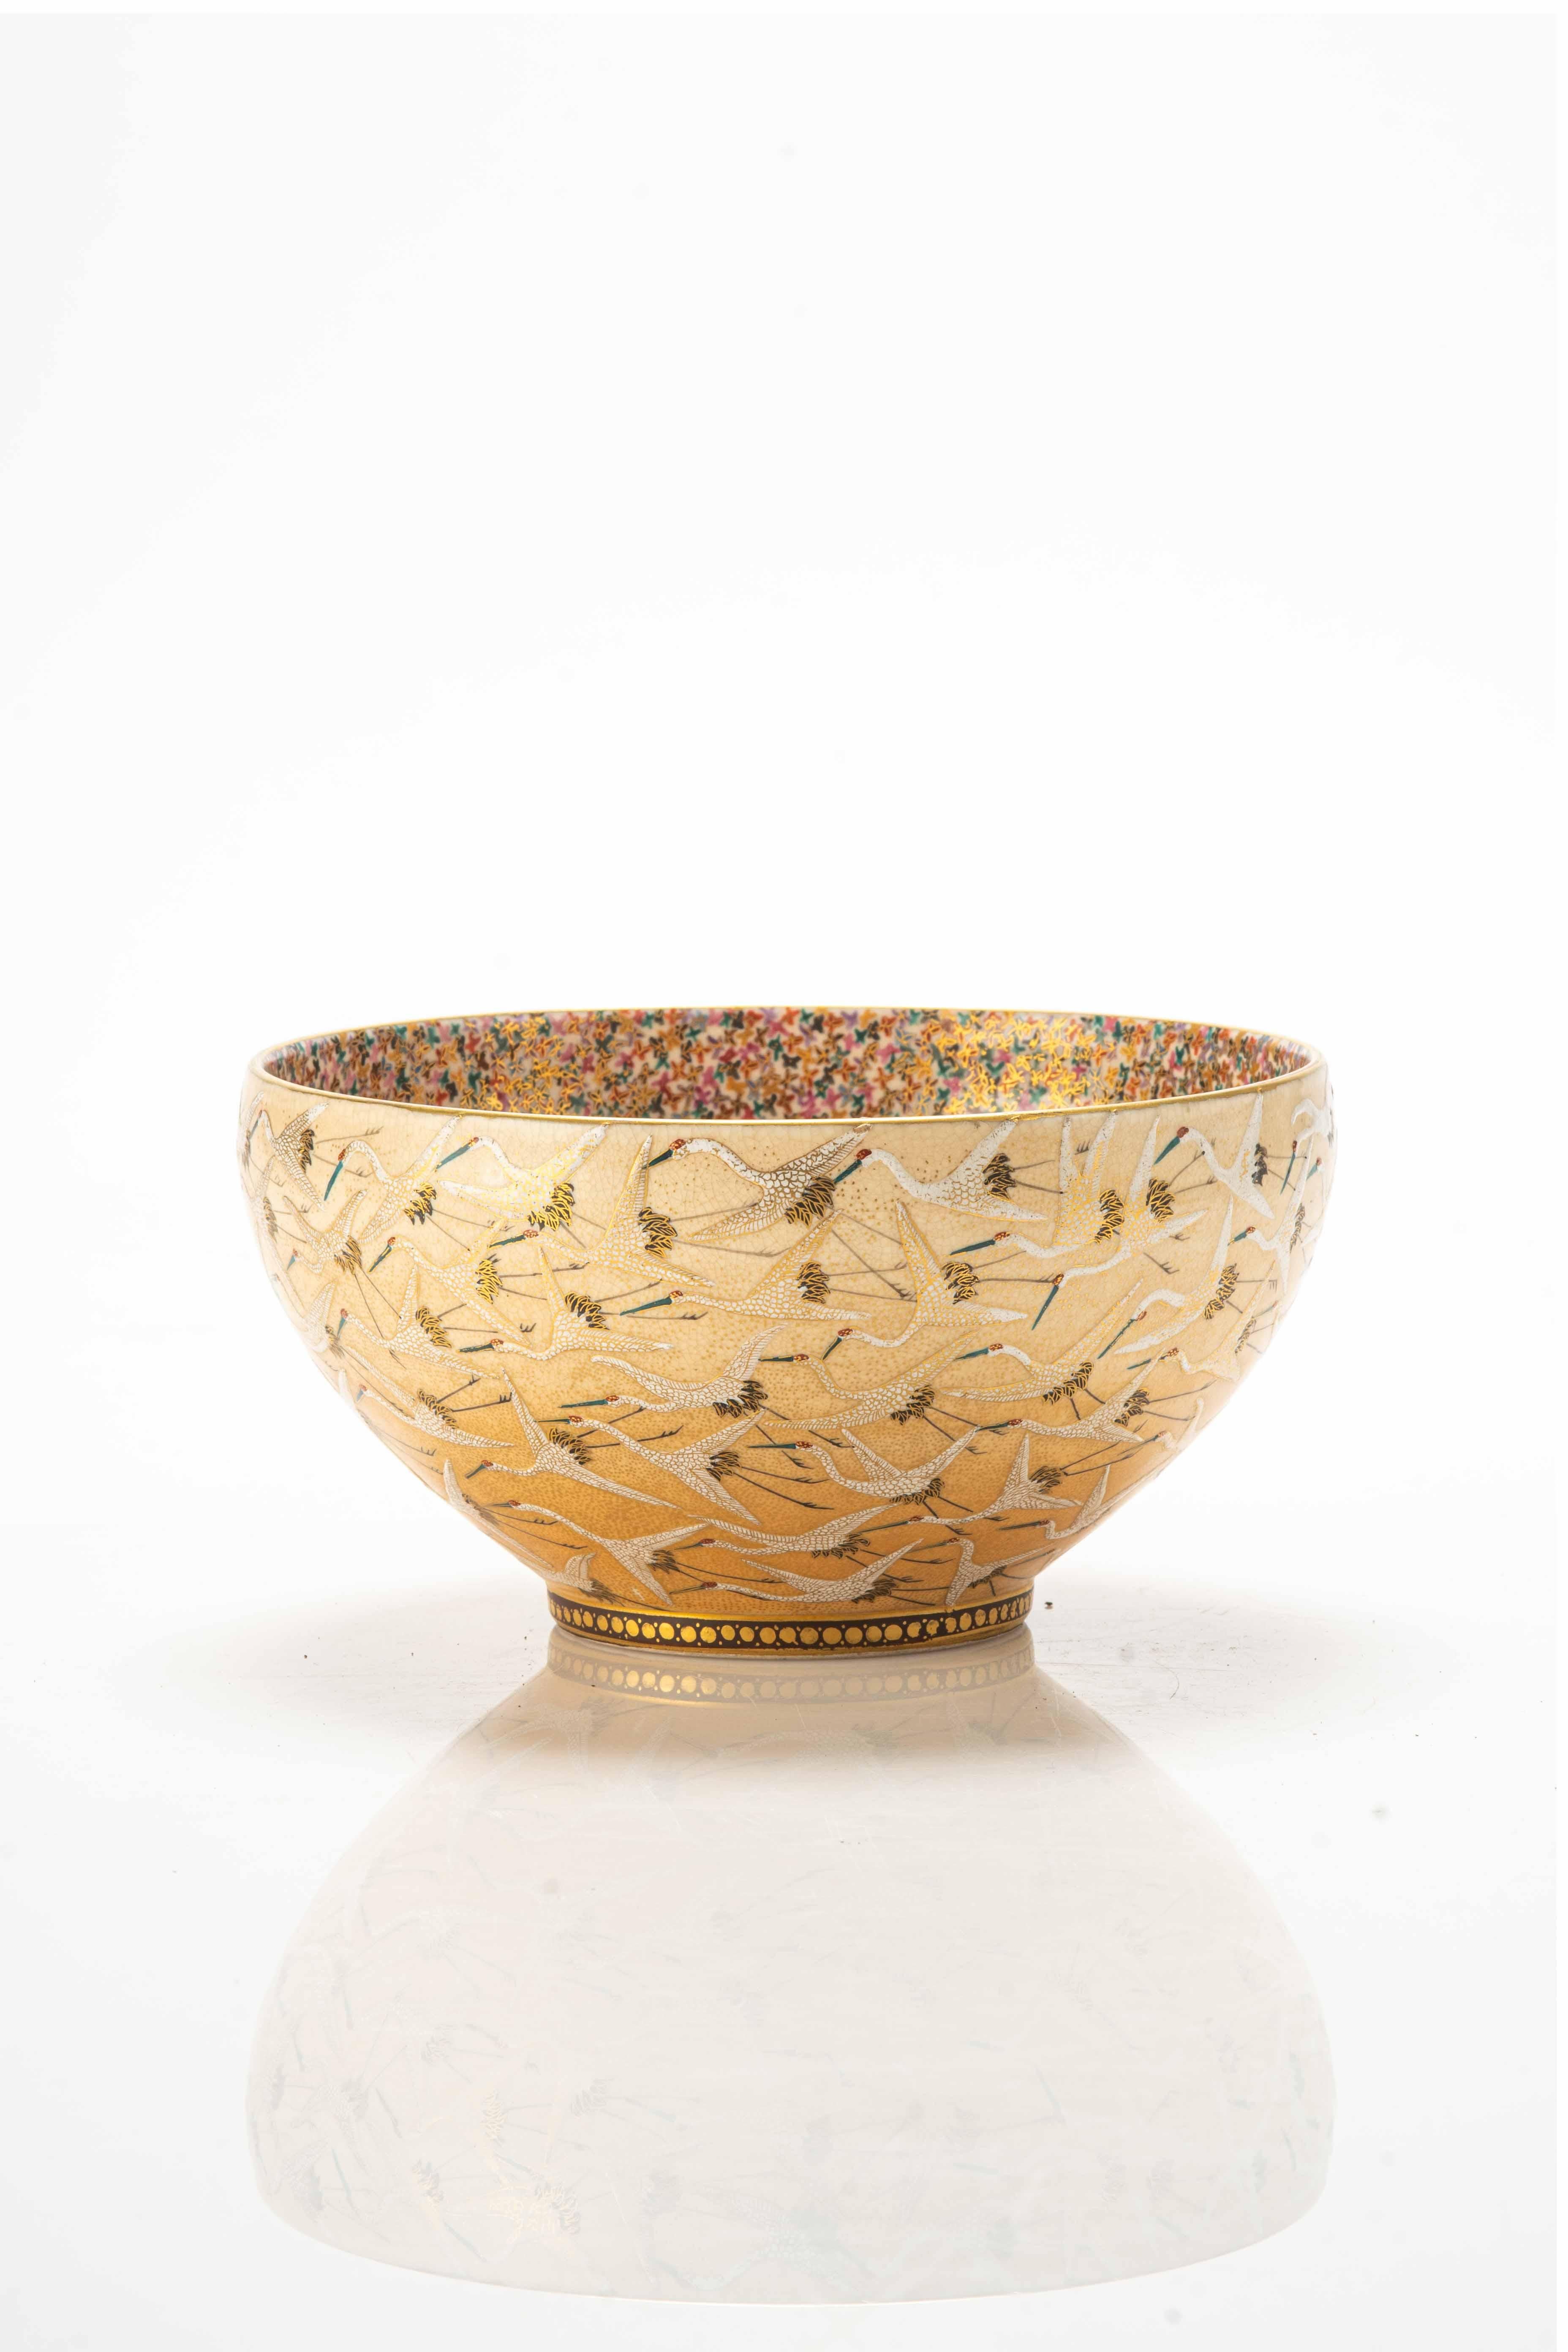 Schale aus Satsuma-Keramik mit Reliefglasuren und goldenen Details, die ein Motiv von Mandschurenkranichen im Flug zeigen, die in der japanischen Kultur Symbole für Langlebigkeit und Glück sind.

Das Innere der Schale zeigt ein dichtes Motiv von